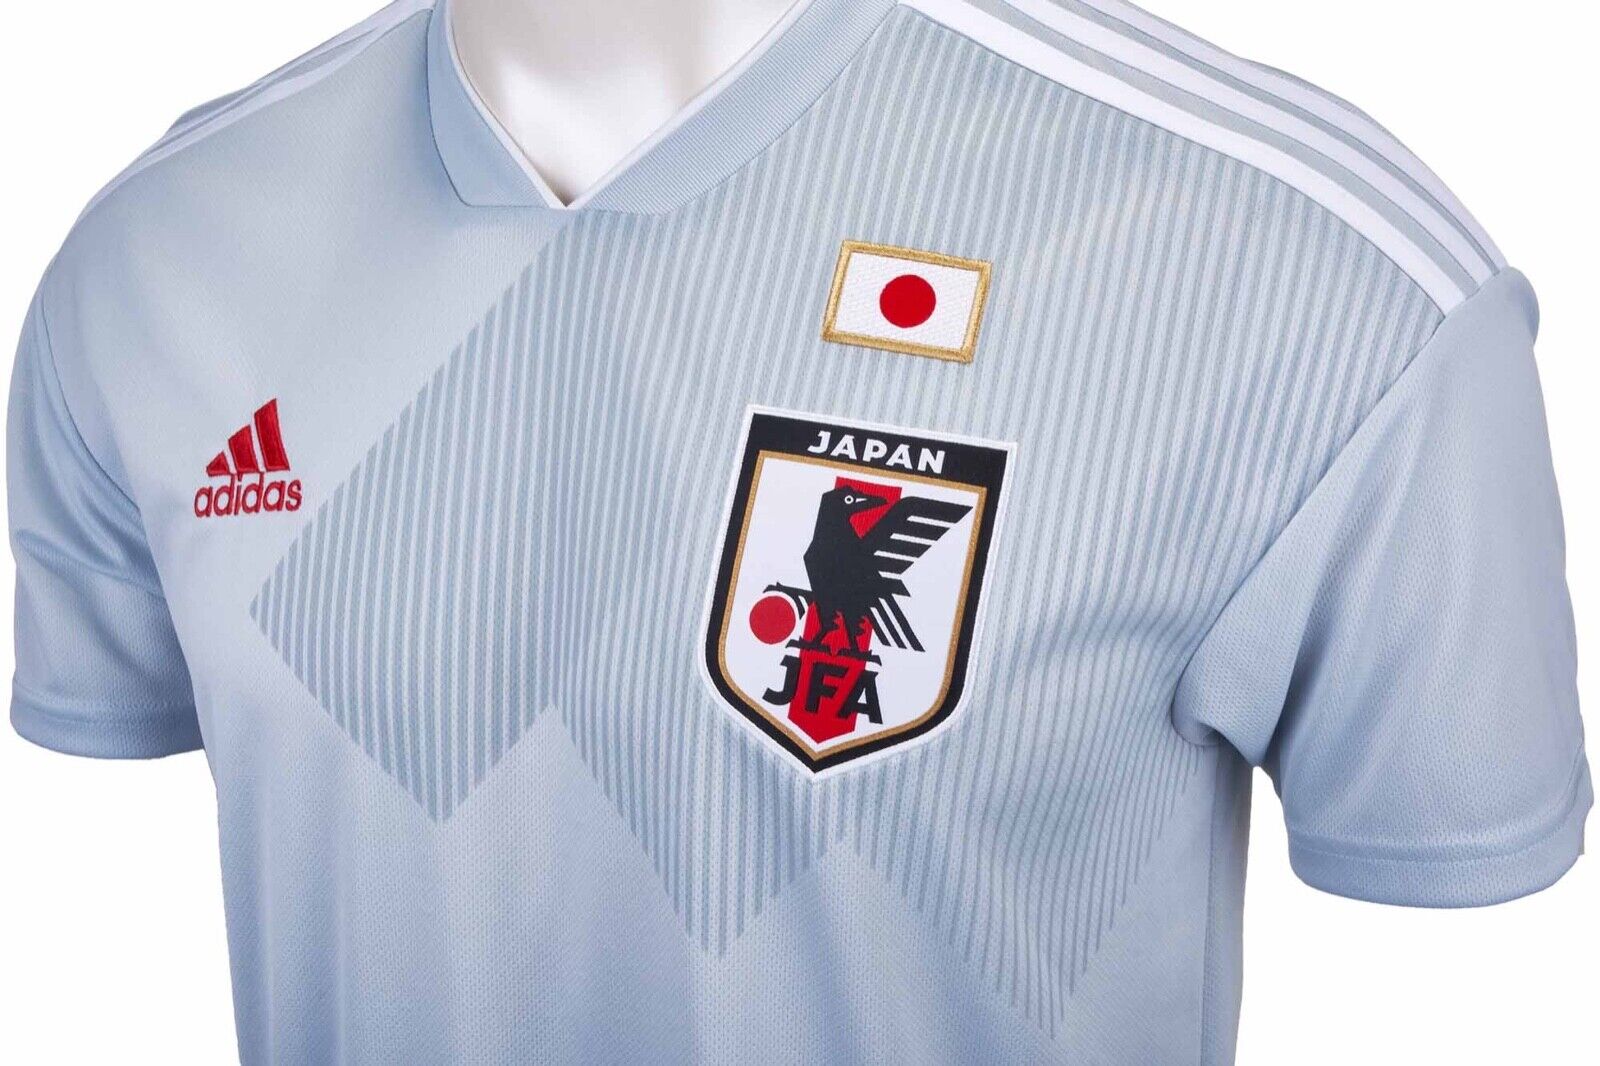 Adidas Japan Official Away Jersey 2018